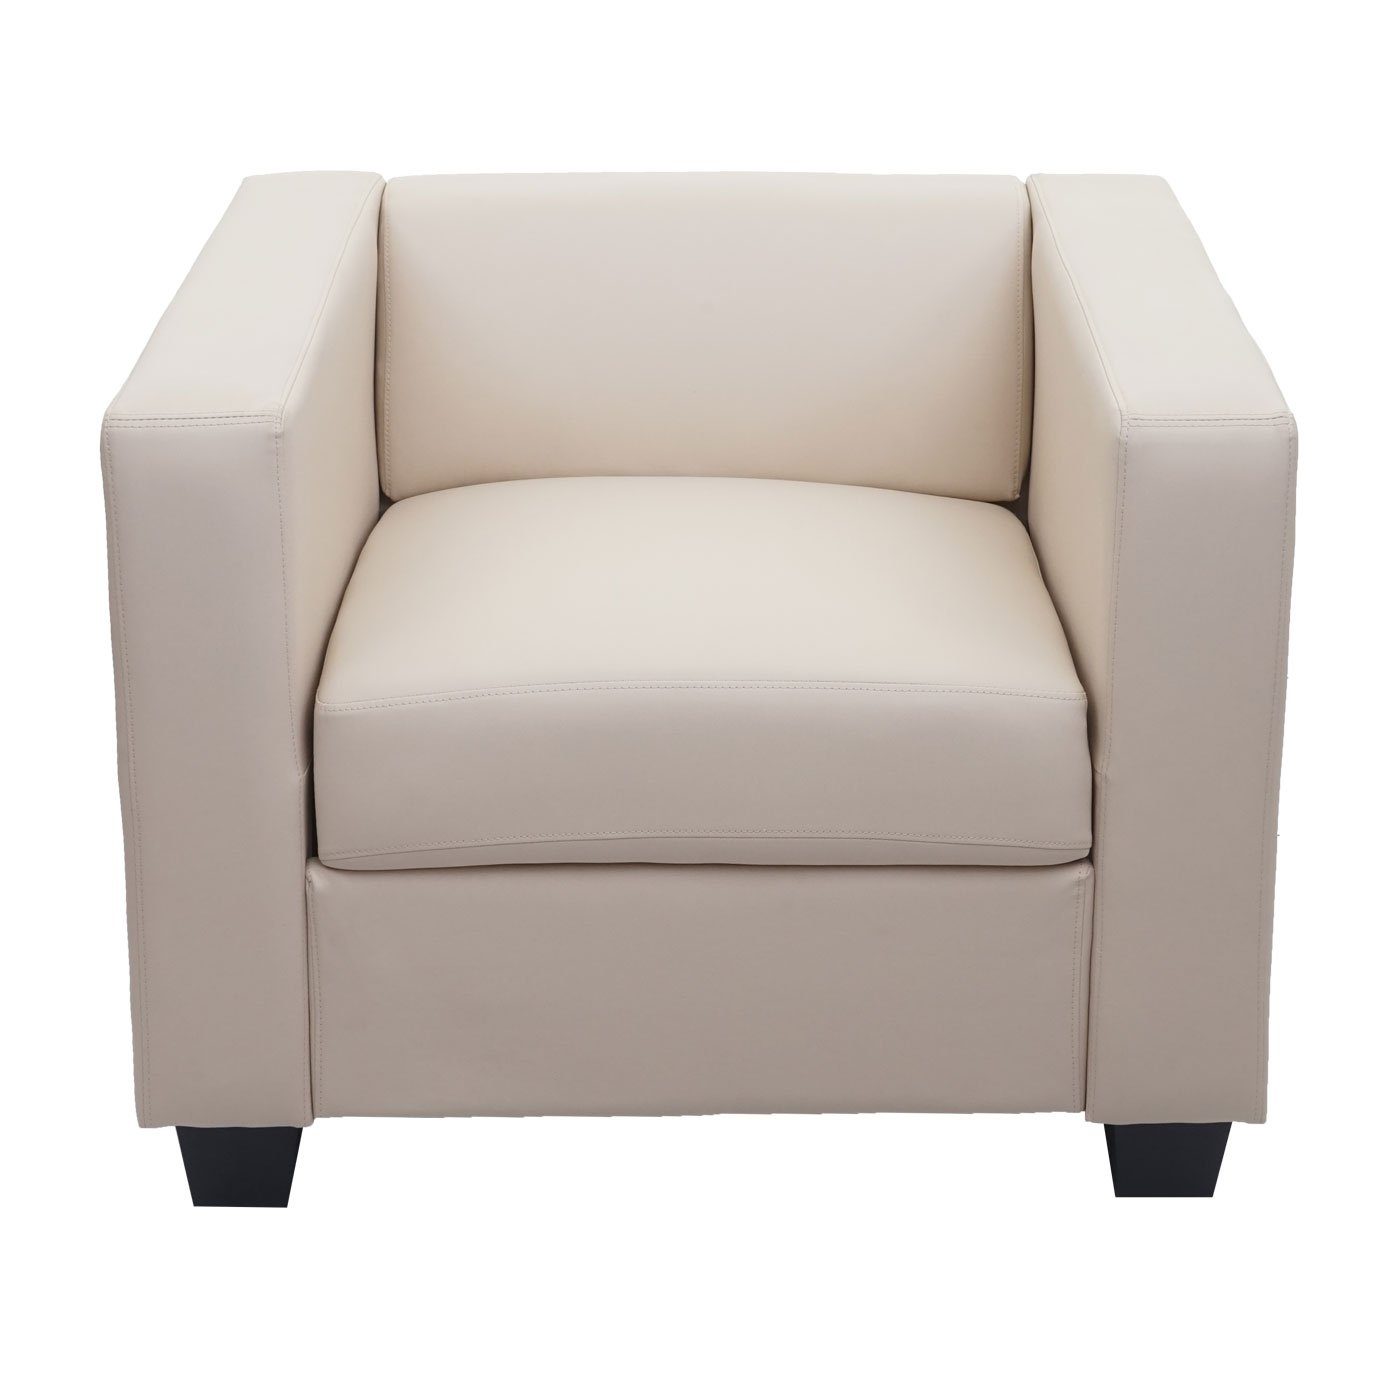 3er und Sitzpolsterung, 2x Lille-3-1-1-L, creme Bequeme einem aus Sofa Wohnlandschaft Sessel, bestehend MCW Kunststofffüße